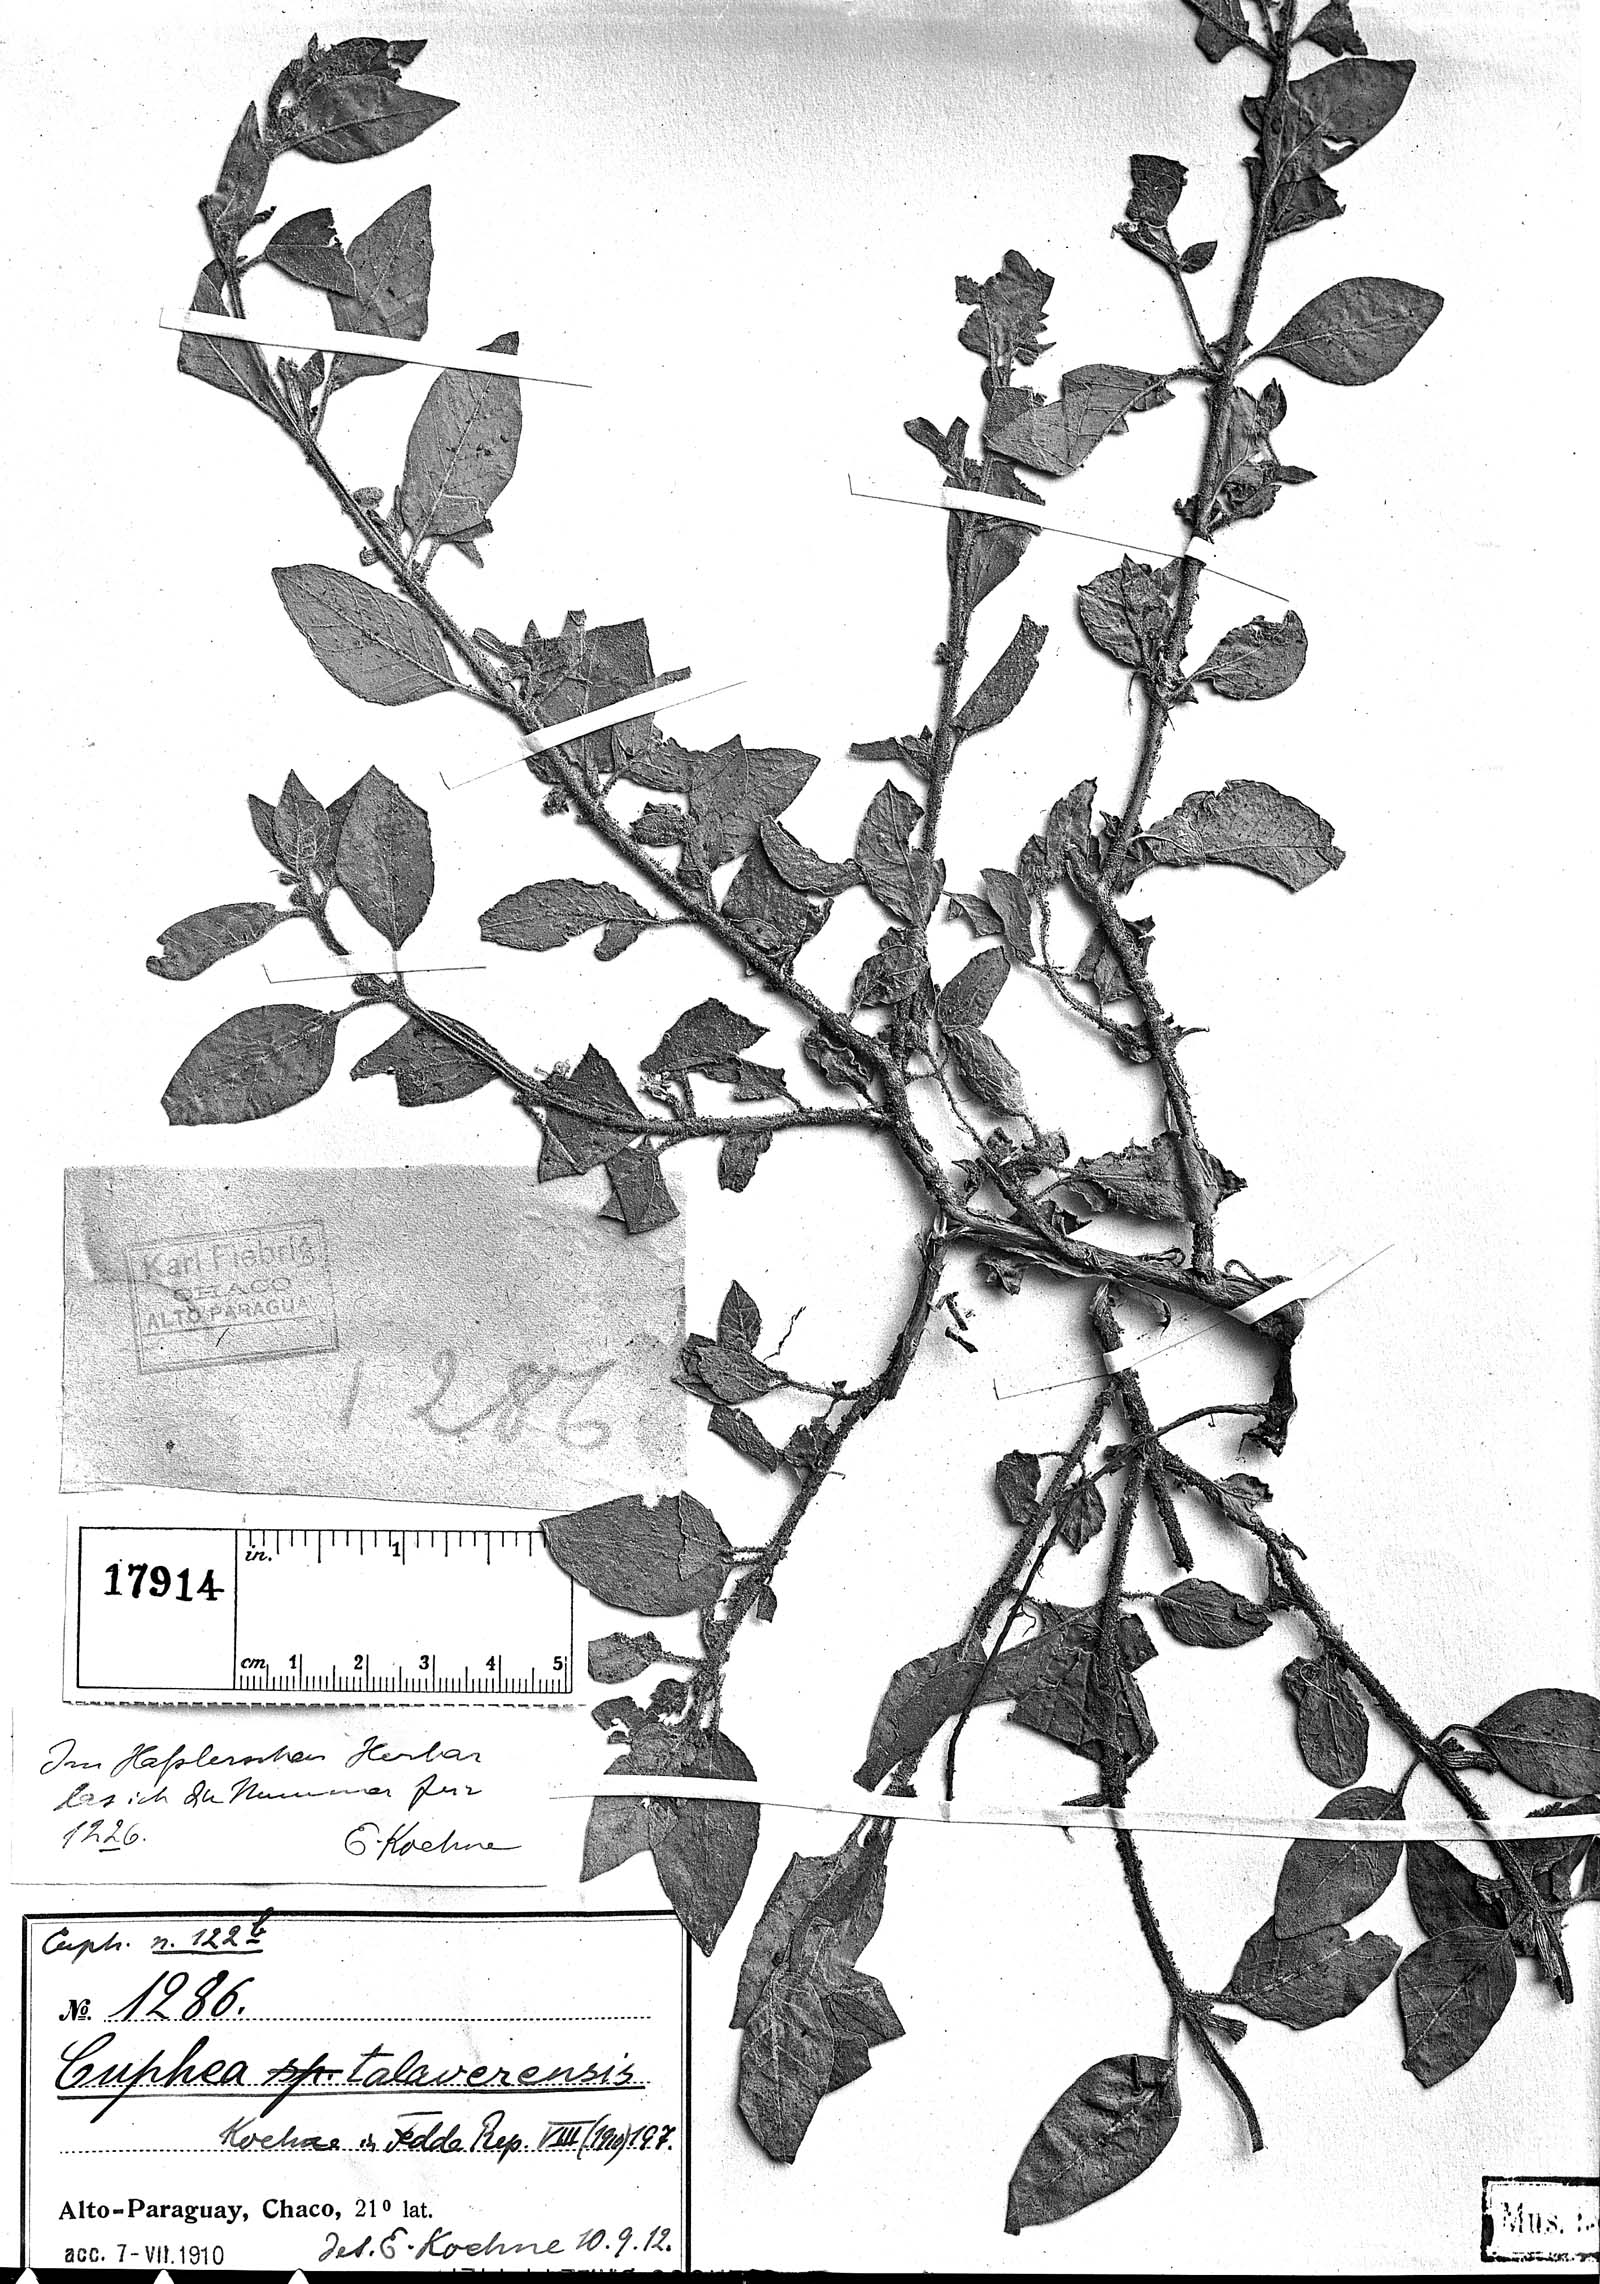 Cuphea sessiliflora image